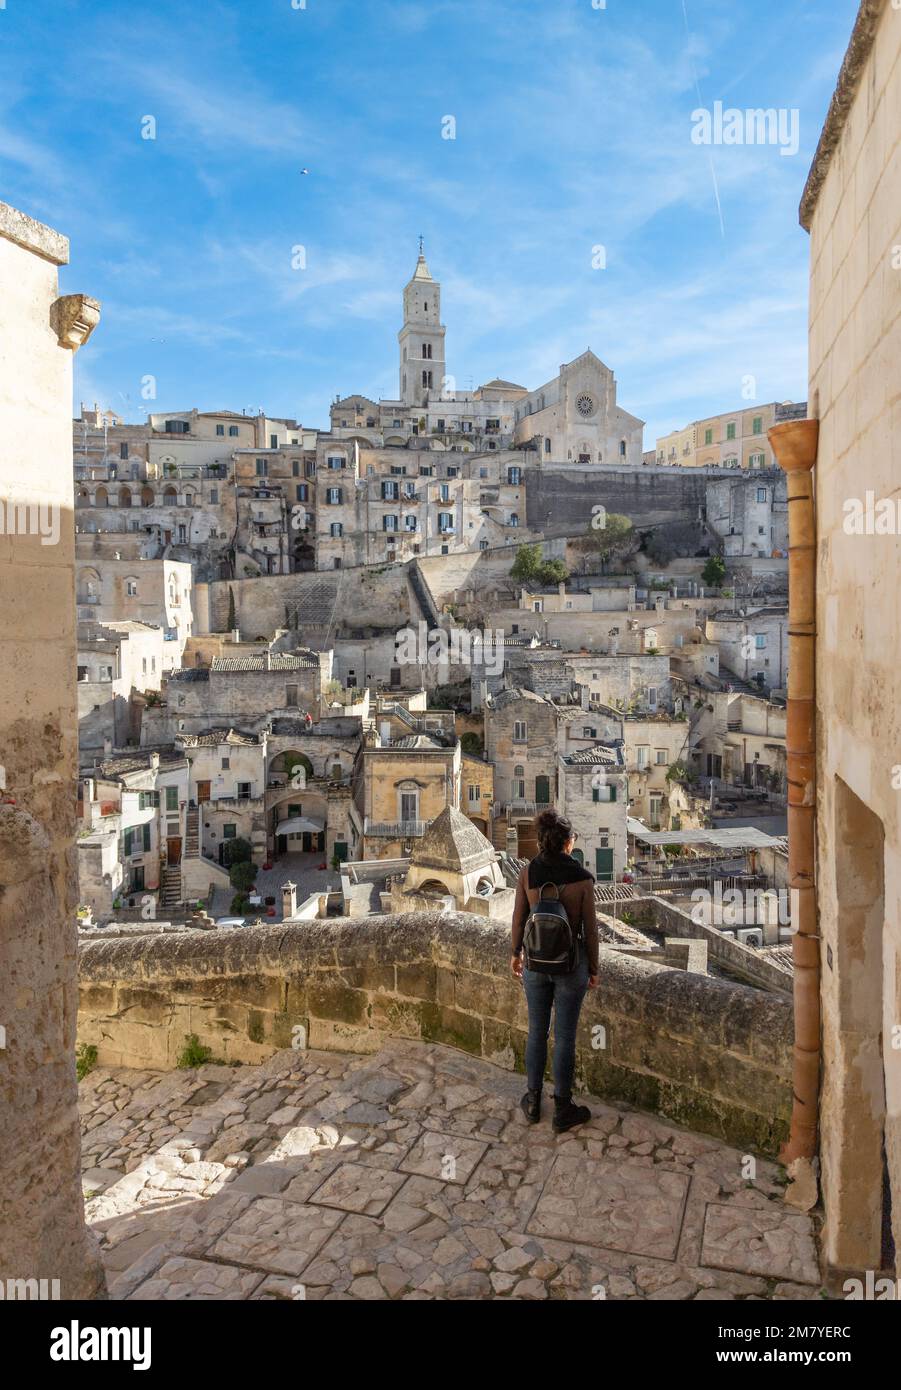 Matera (Basilicate) - le centre historique de la ville de pierre dans le sud de l'Italie, une attraction touristique pour la célèbre vieille ville de ssi, Murgia et le canyon de Gravina Banque D'Images